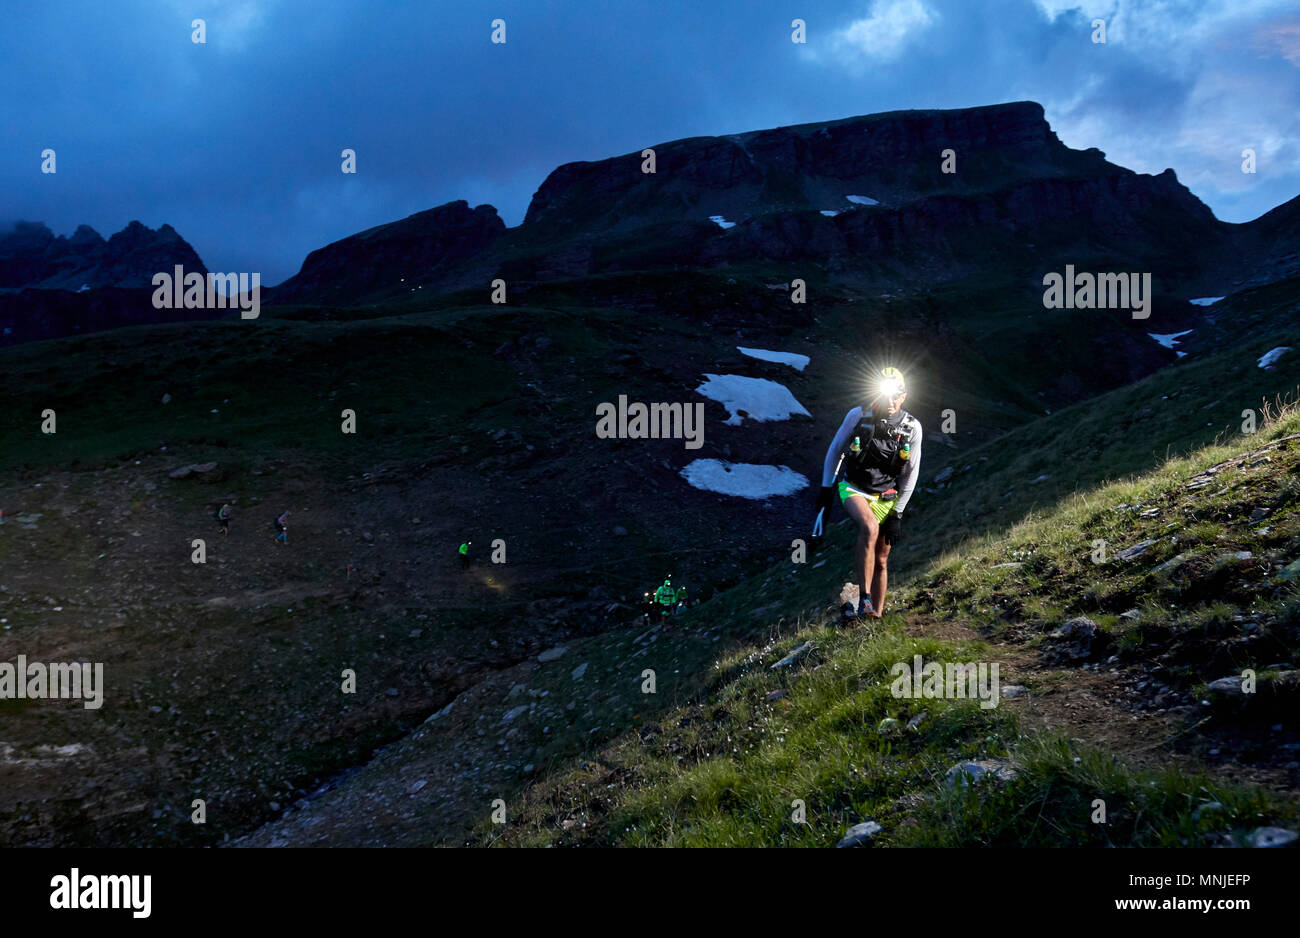 Les randonneurs de projecteurs de la randonnée au soir, à l'Alpe Devero, Verbania, Italie Banque D'Images